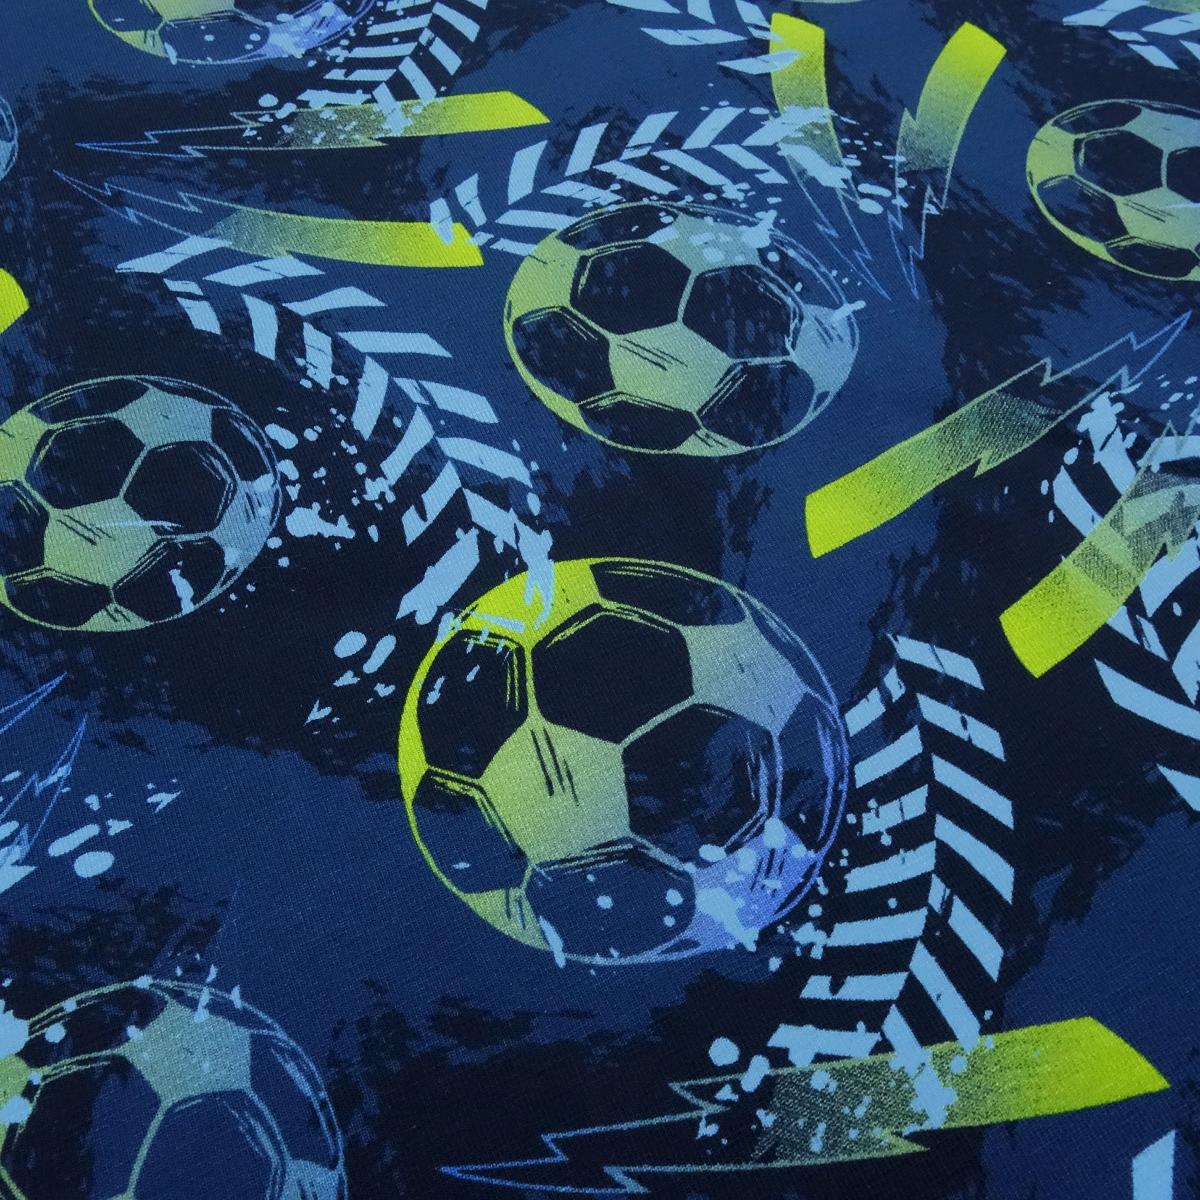 Stoff Baumwolle Jersey Team Fußball Football Soccer Design blau marine gelbgrün bunt Kinderstoff Kleiderstoff